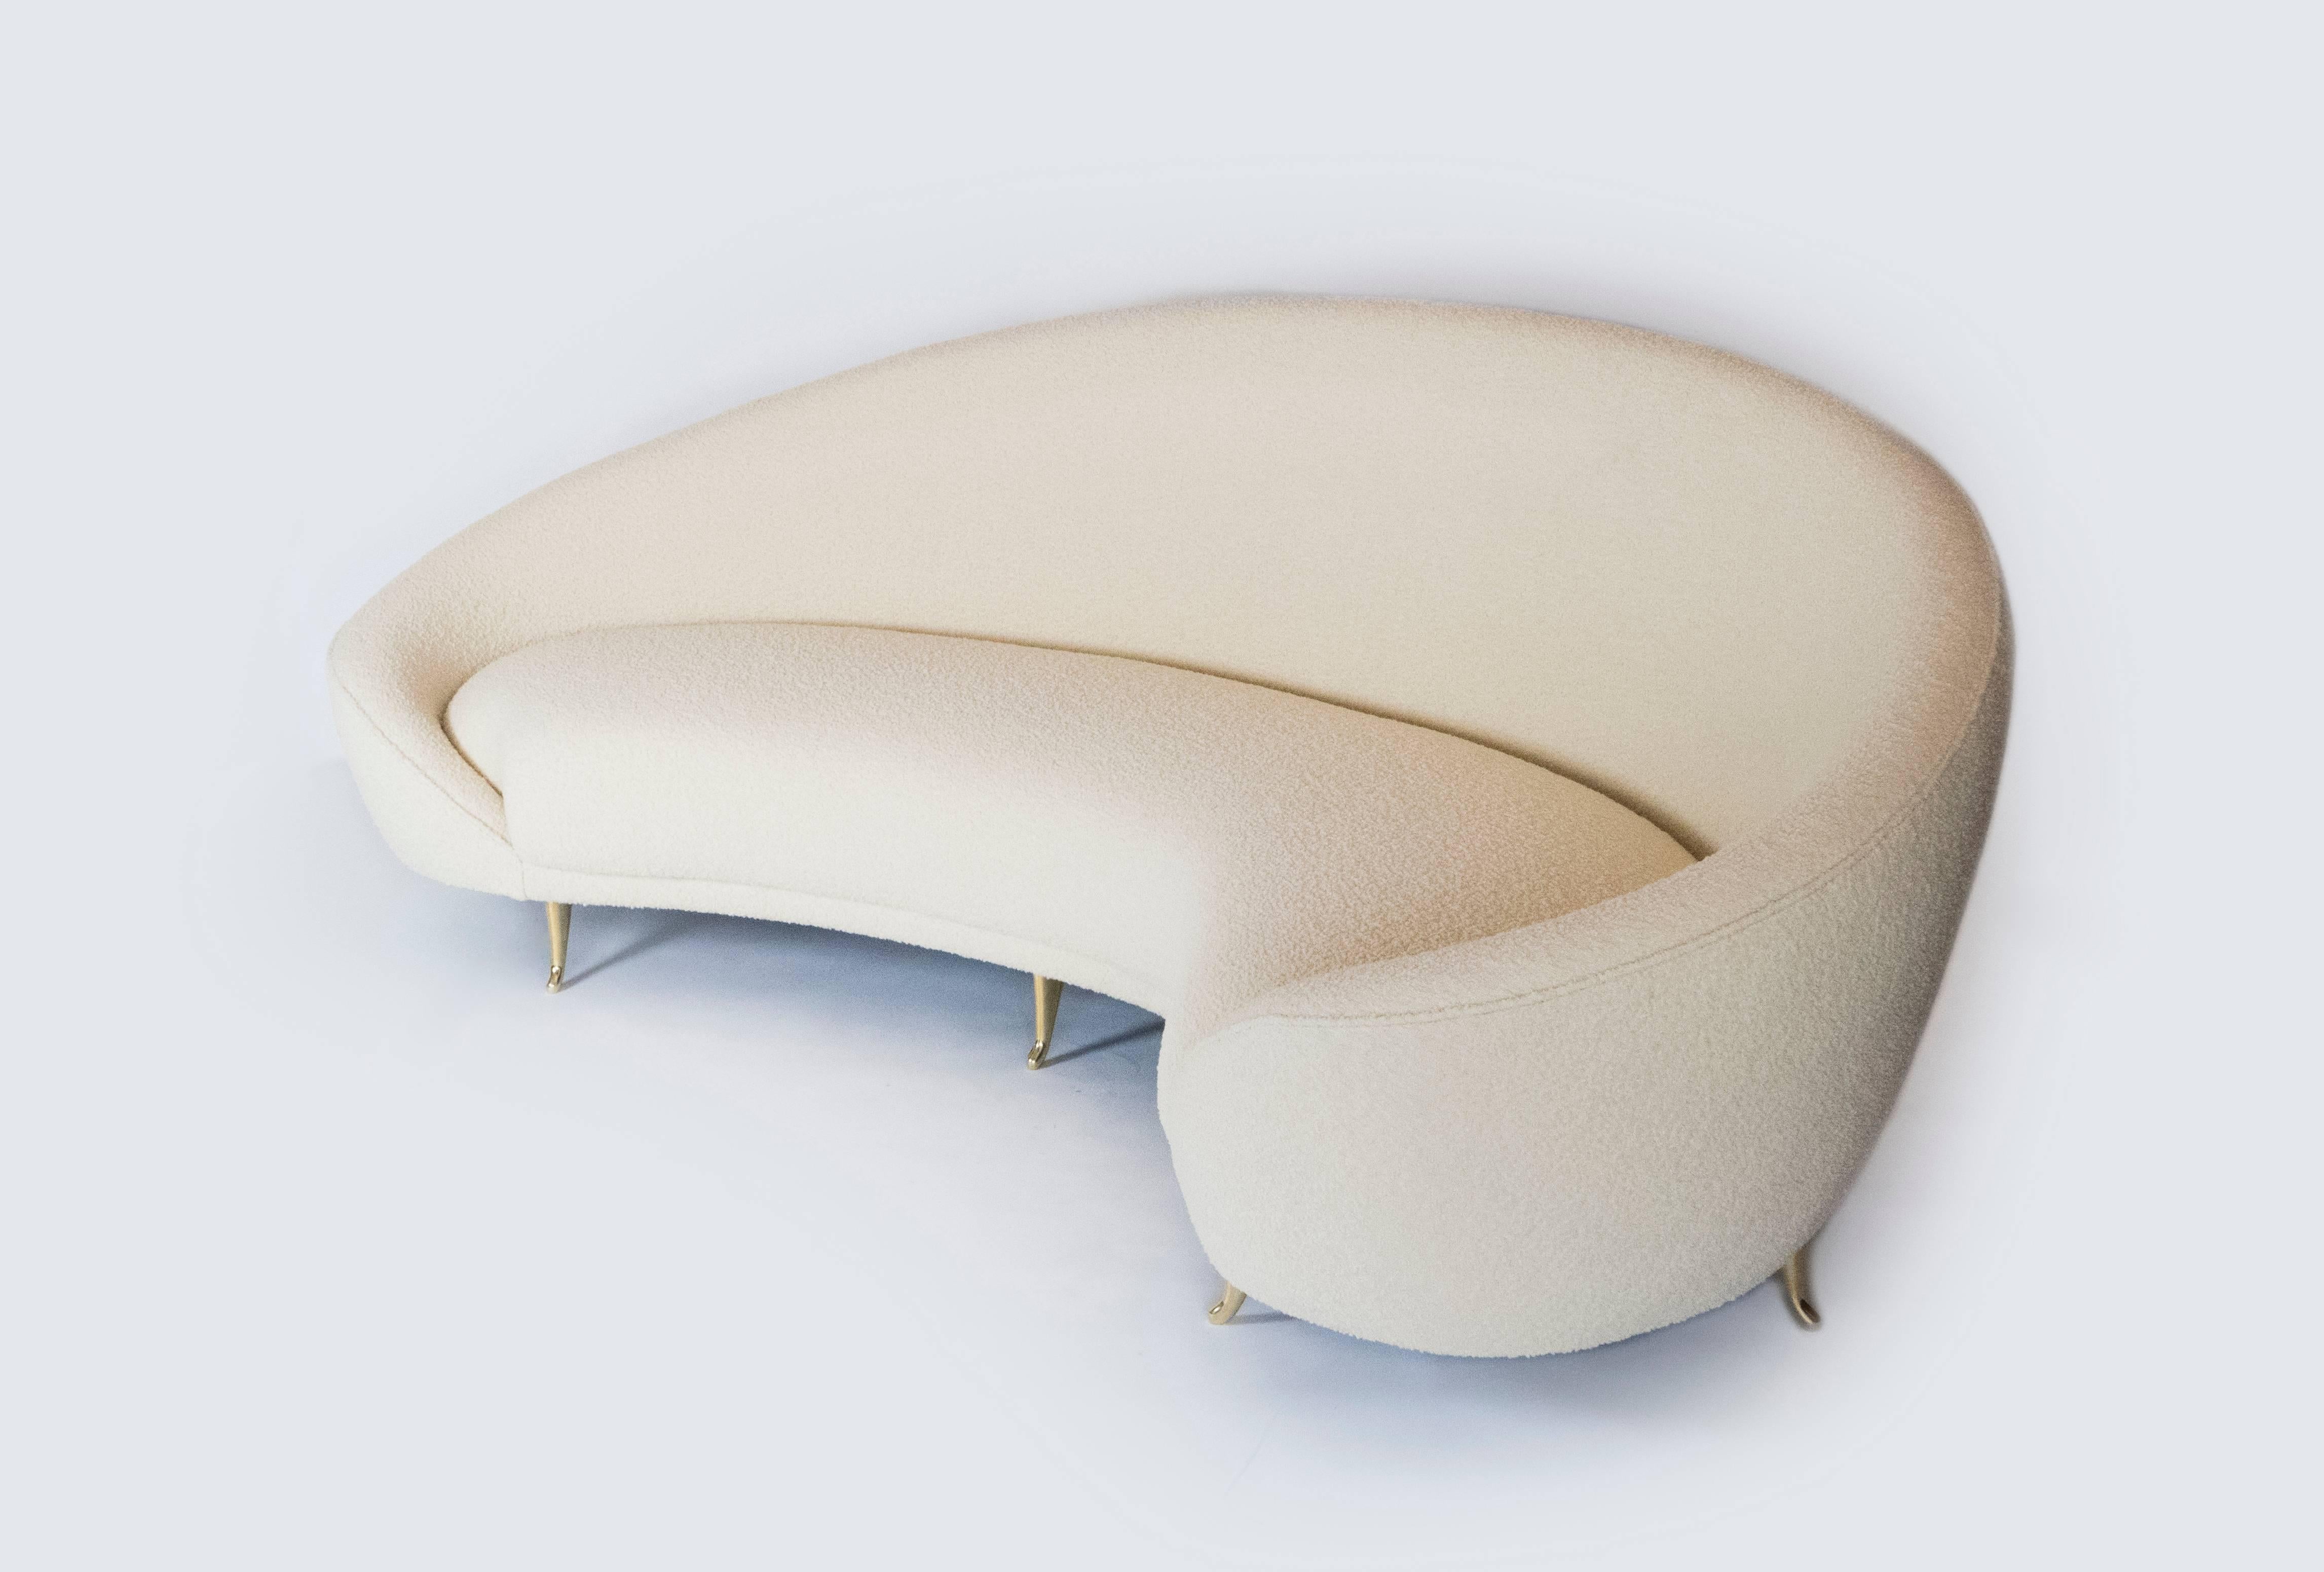 Dieses schicke Sofa, das an die 1960er Jahre erinnert, hat elegante Linien mit anmutigen Kurven. Die Messingfüße tragen mit ihrem filigranen Design zu seiner Raffinesse bei. Er wird sicherlich der Mittelpunkt eines jeden Raumes sein. Die Nierenform